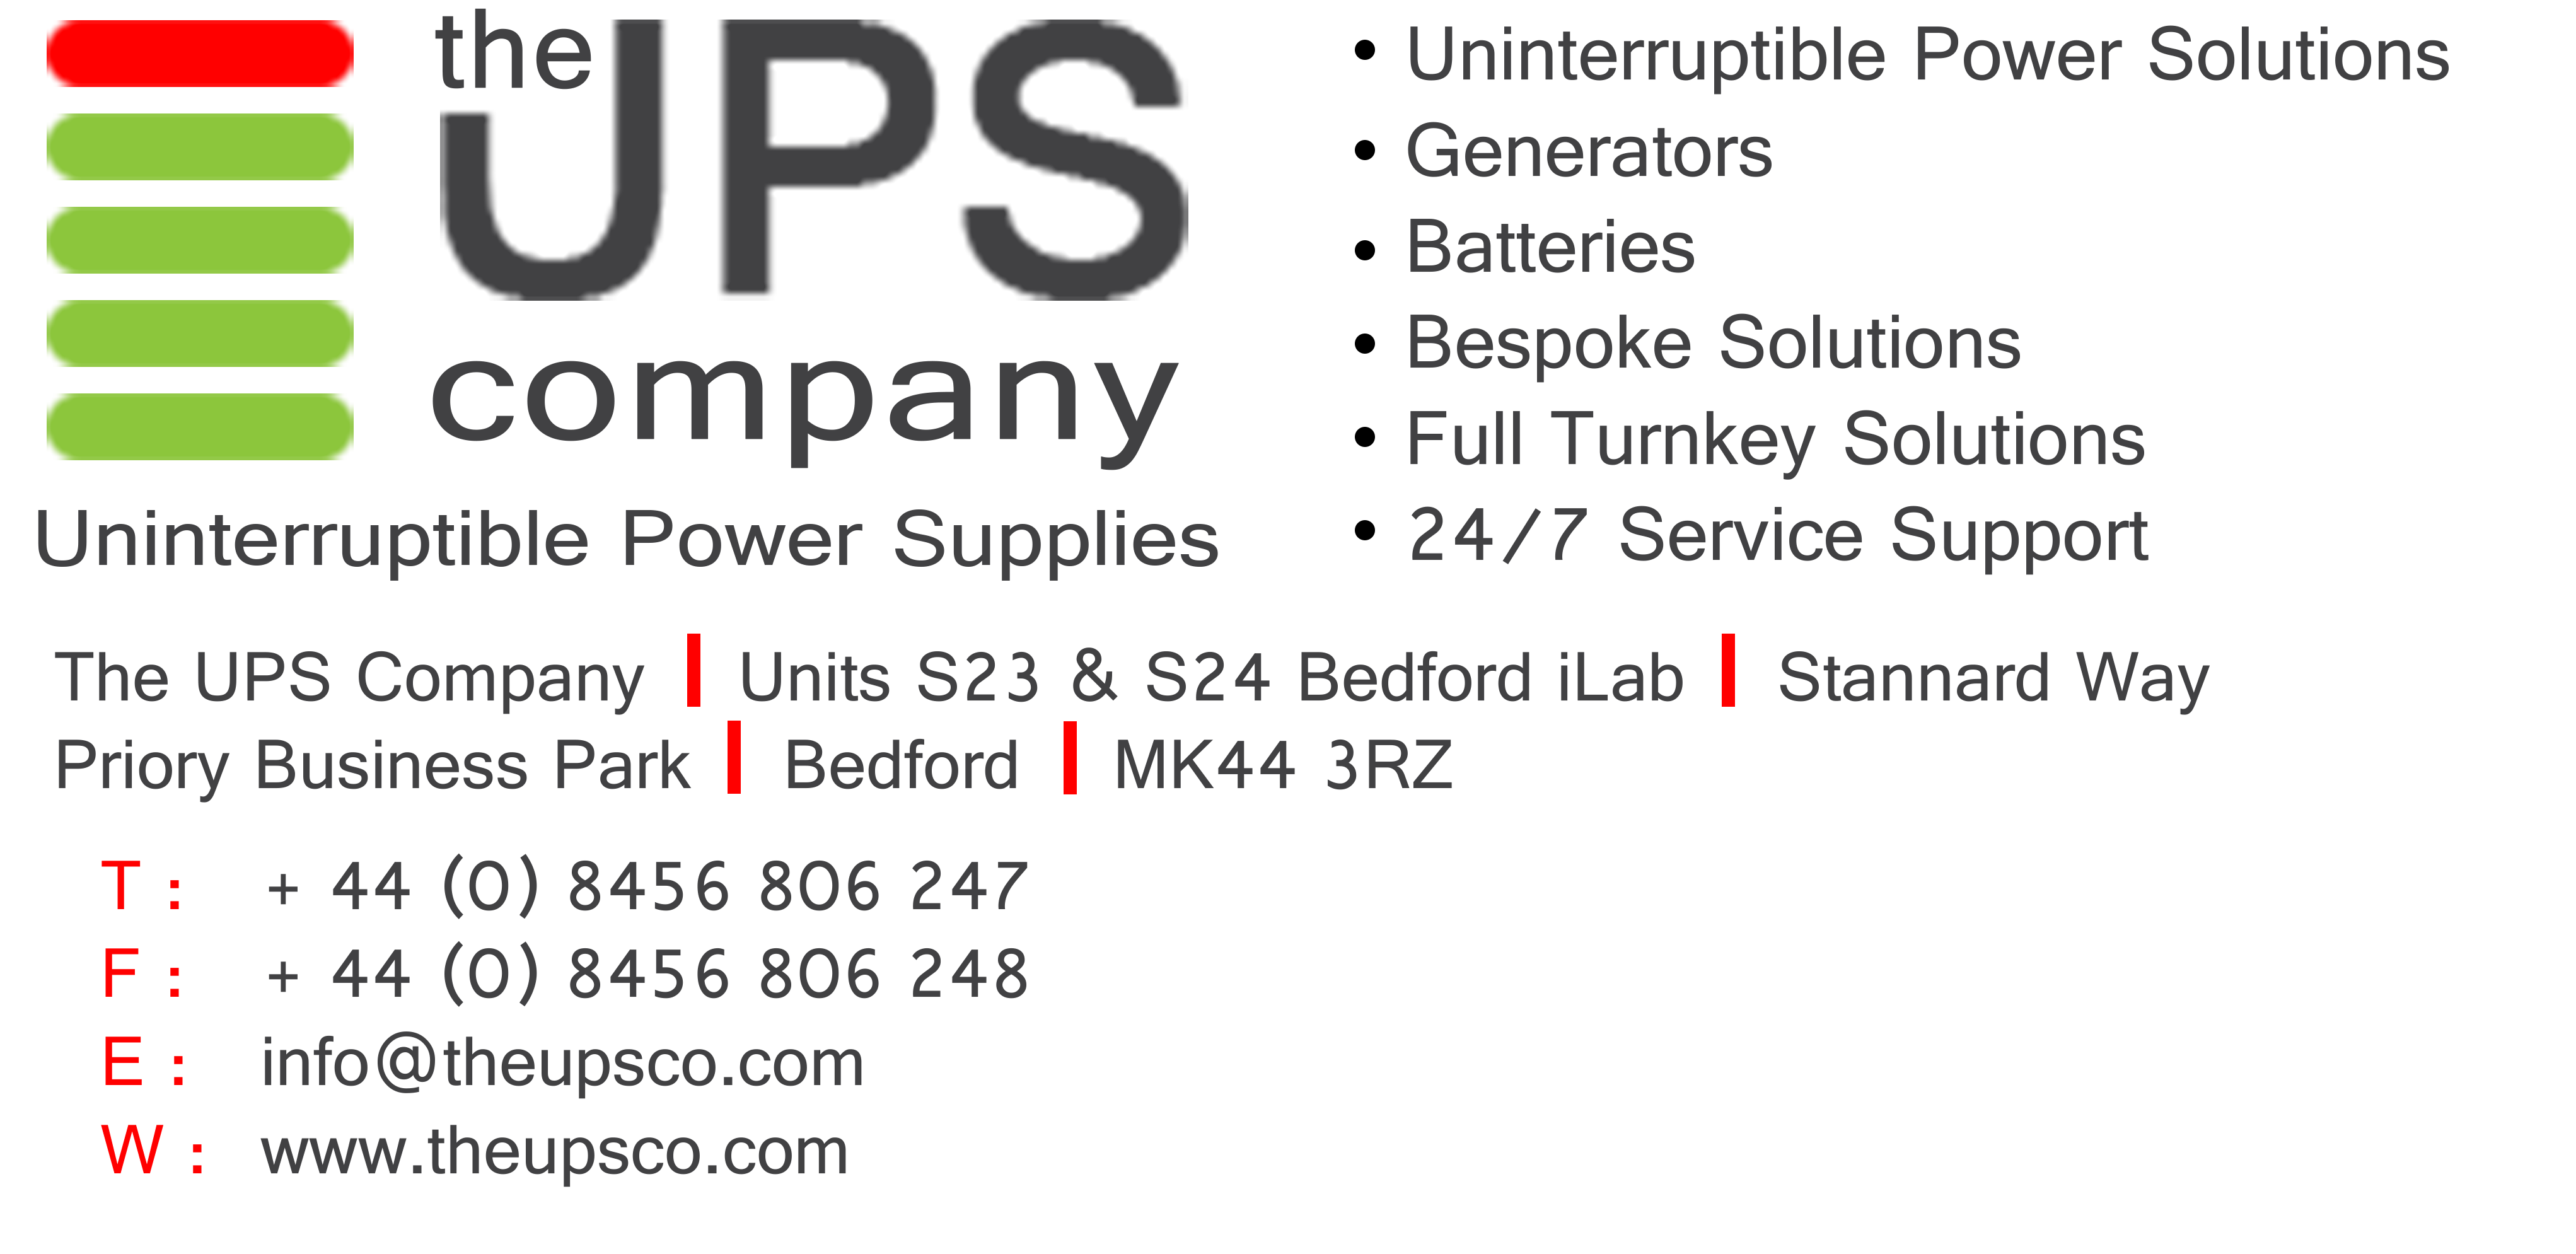 The UPS Company